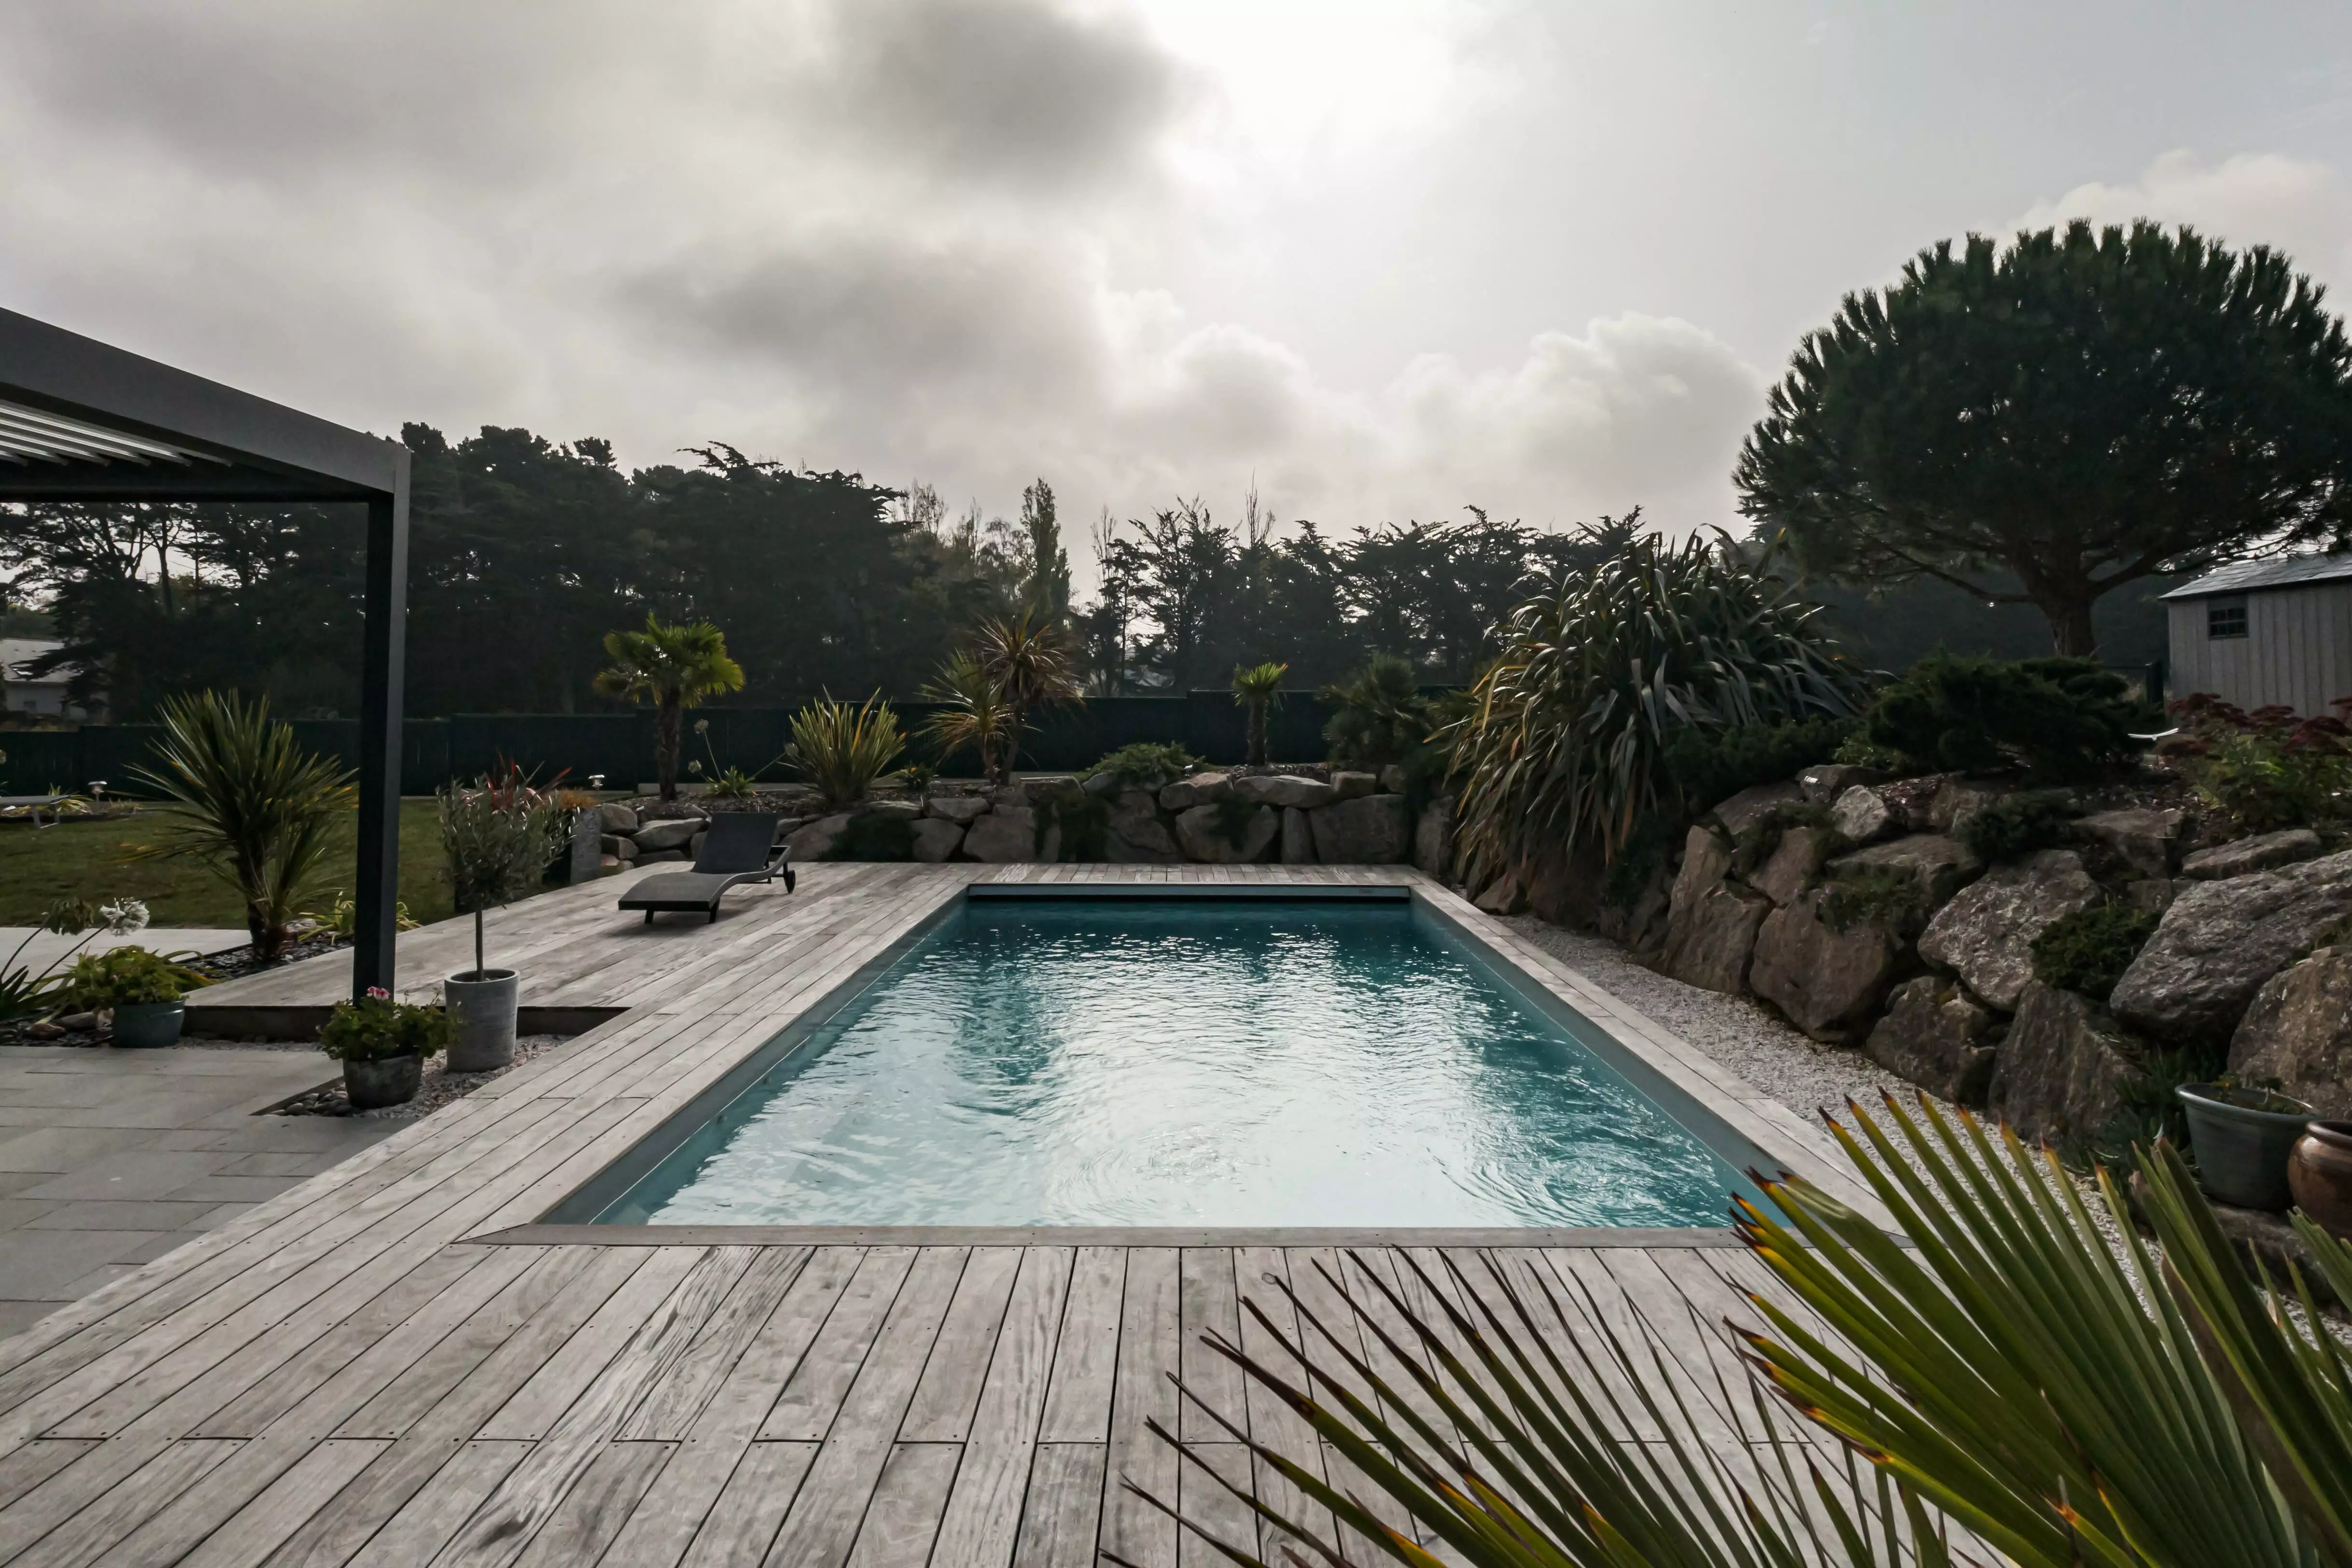 Une maison contemporaine dessinée avec la piscine en focus, adossée à un espace rocheux via une terrasse, rehaussée par des plantes venues d'ailleurs.